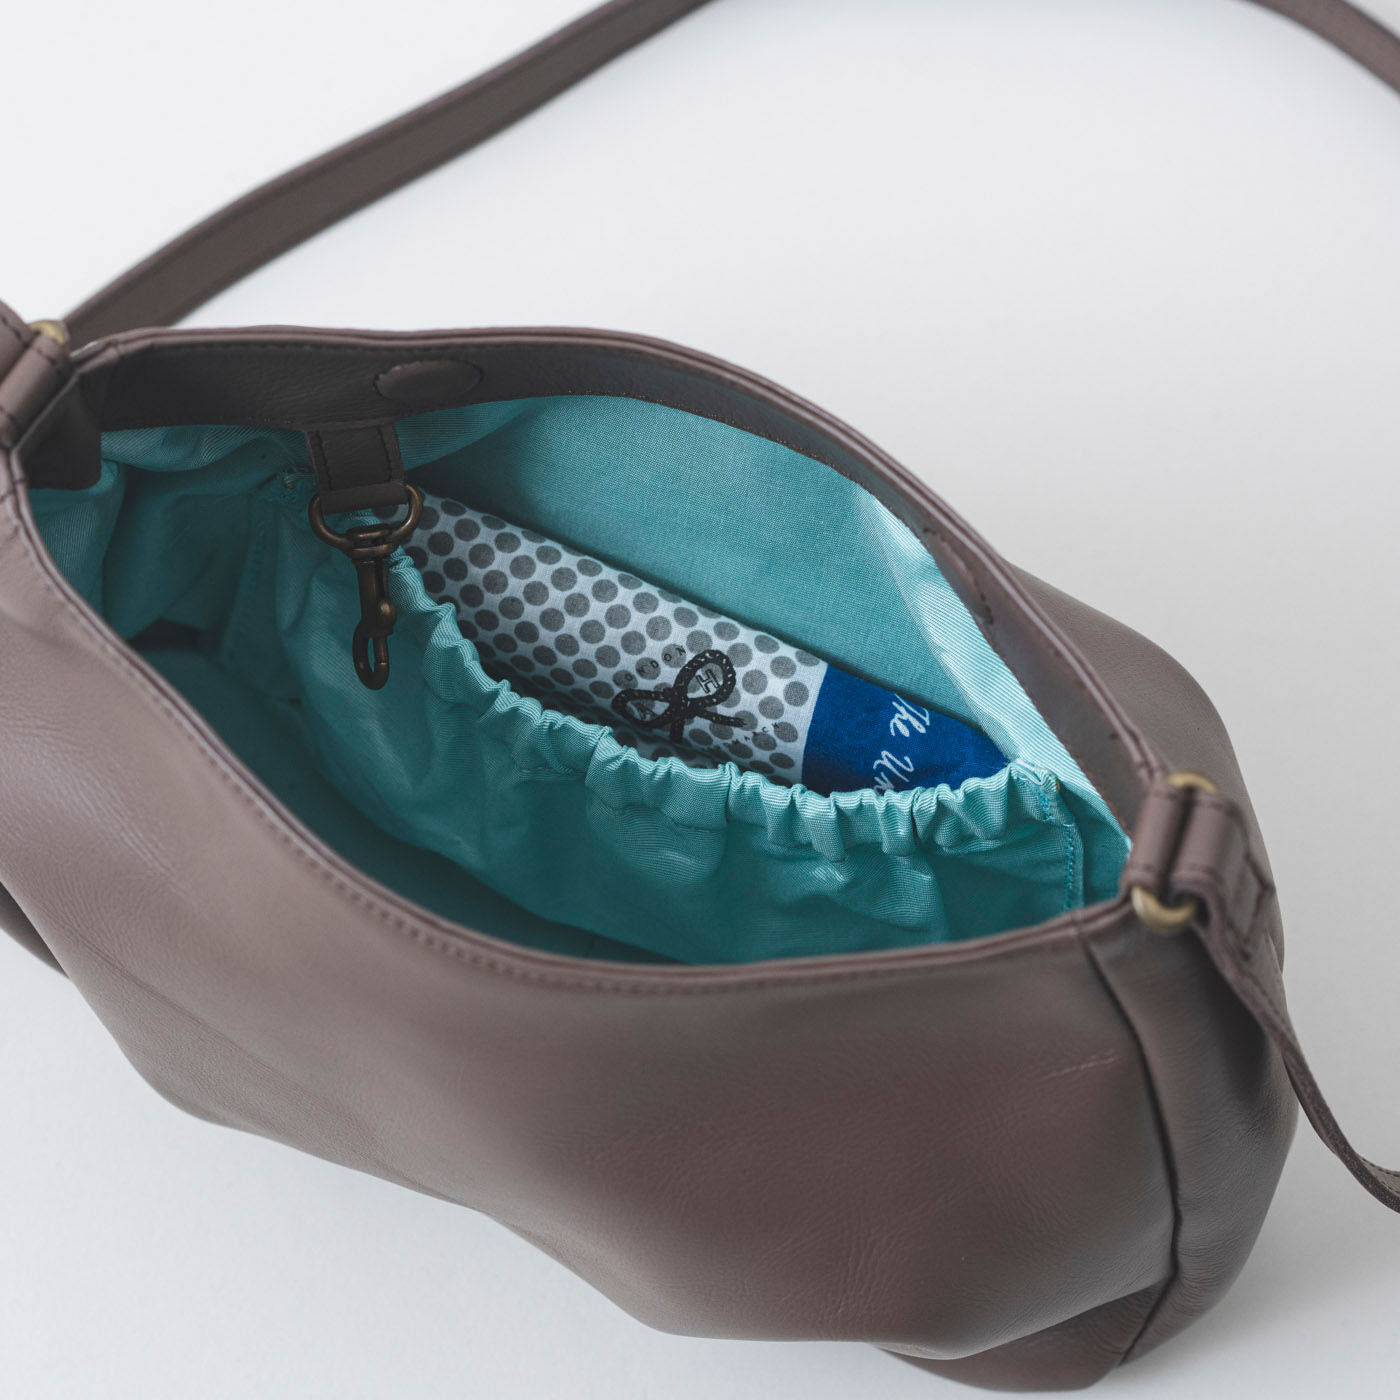 ＆Stories|鞄職人とお母さんが作った 職人本革のパルトゥネールバッグ〈文人茶色〉|内側のポケットには、ハンカチくらいの大きさのものが入ります。